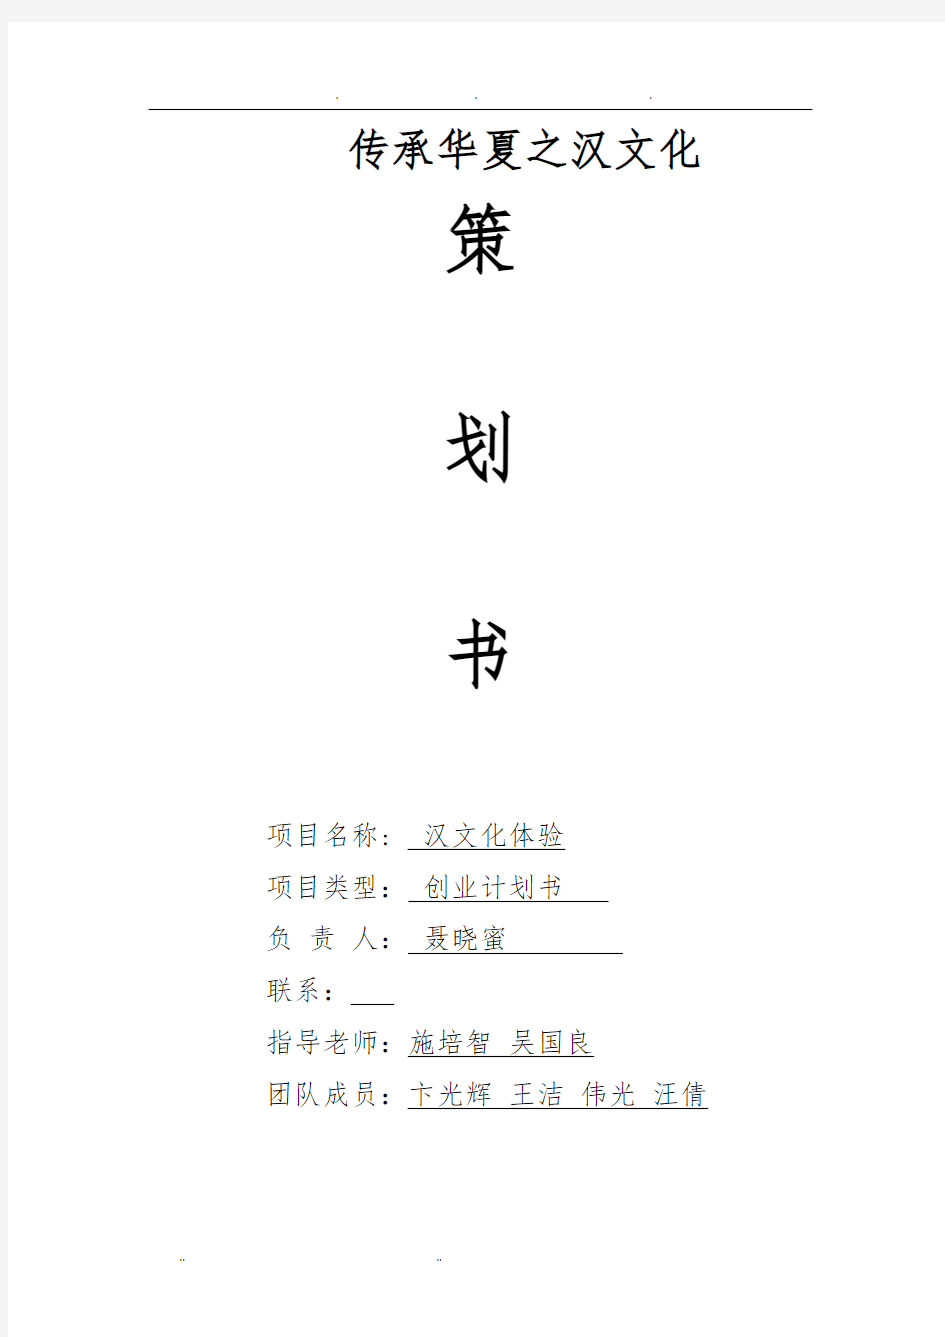 策划书汉文化定稿